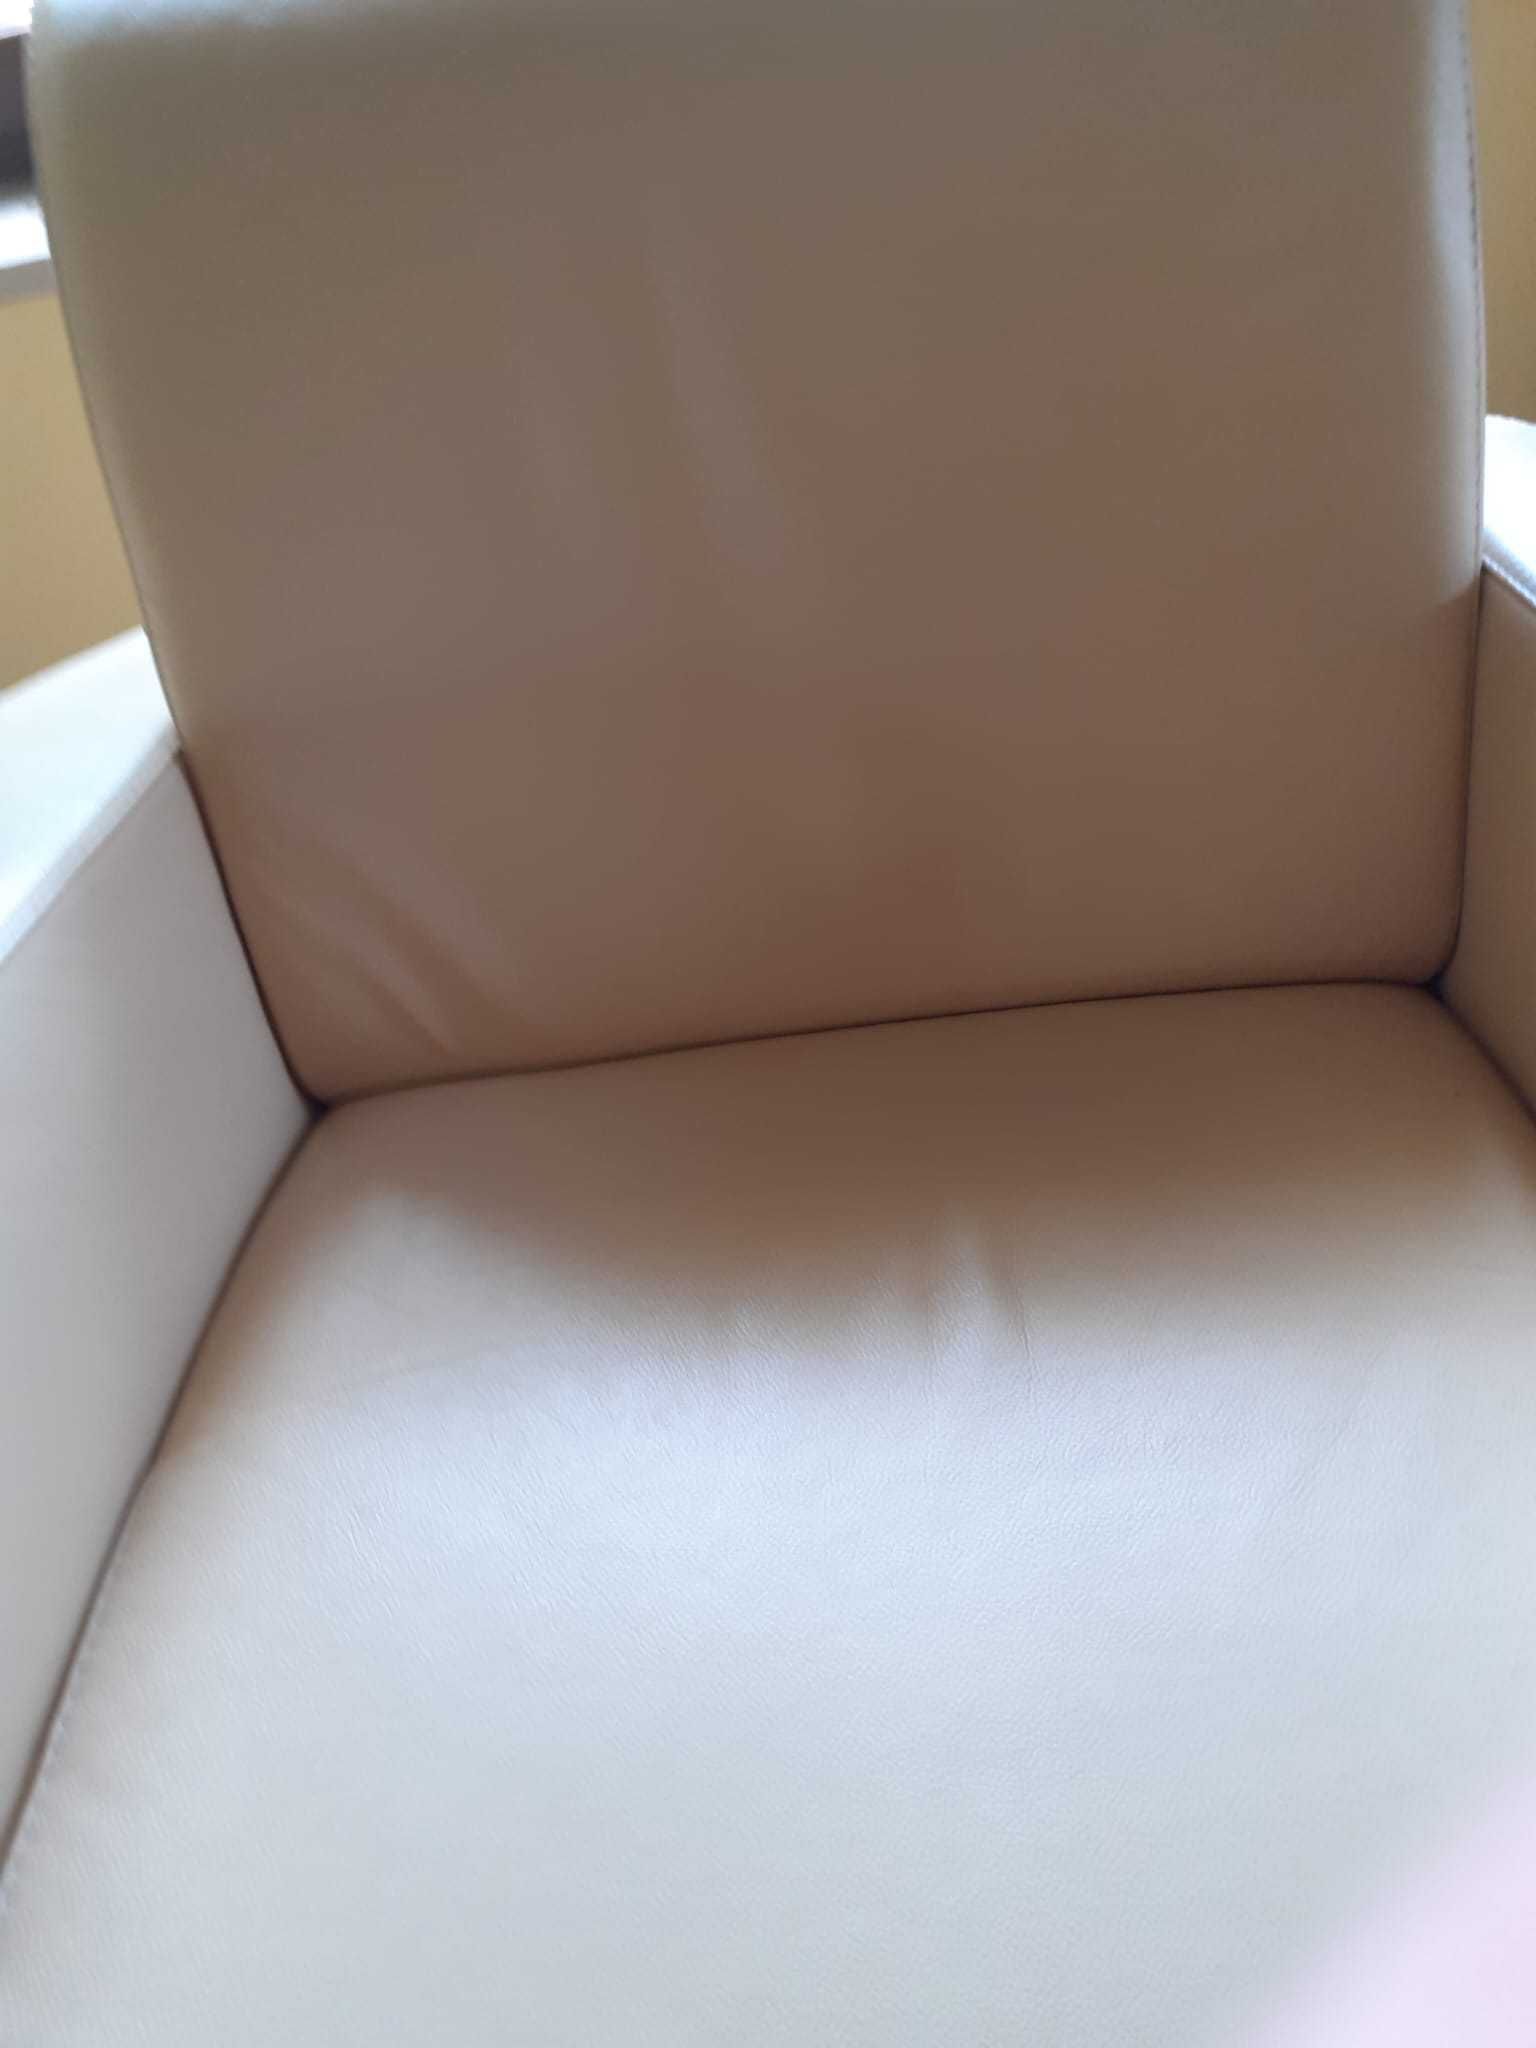 komplet mebli wypoczynkowych - sofa +2 fotele - kremowa skóra